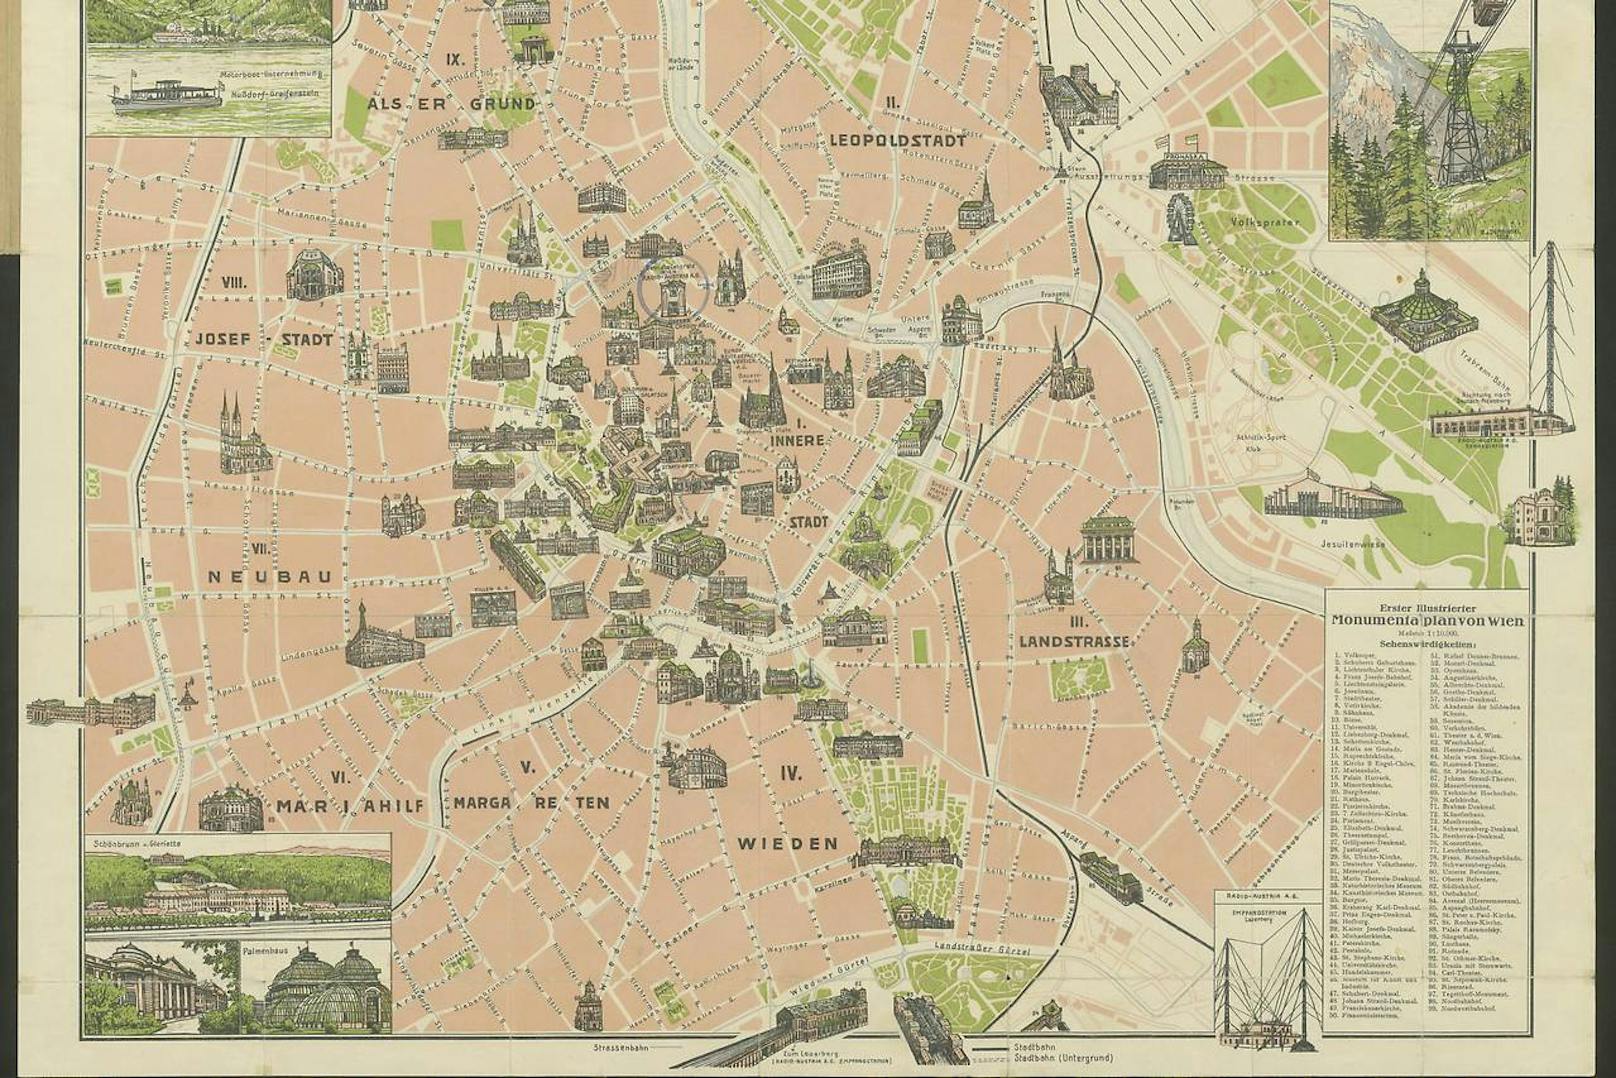 Der erste Monumental-Plan von Wien aus dem Jahr 1928.